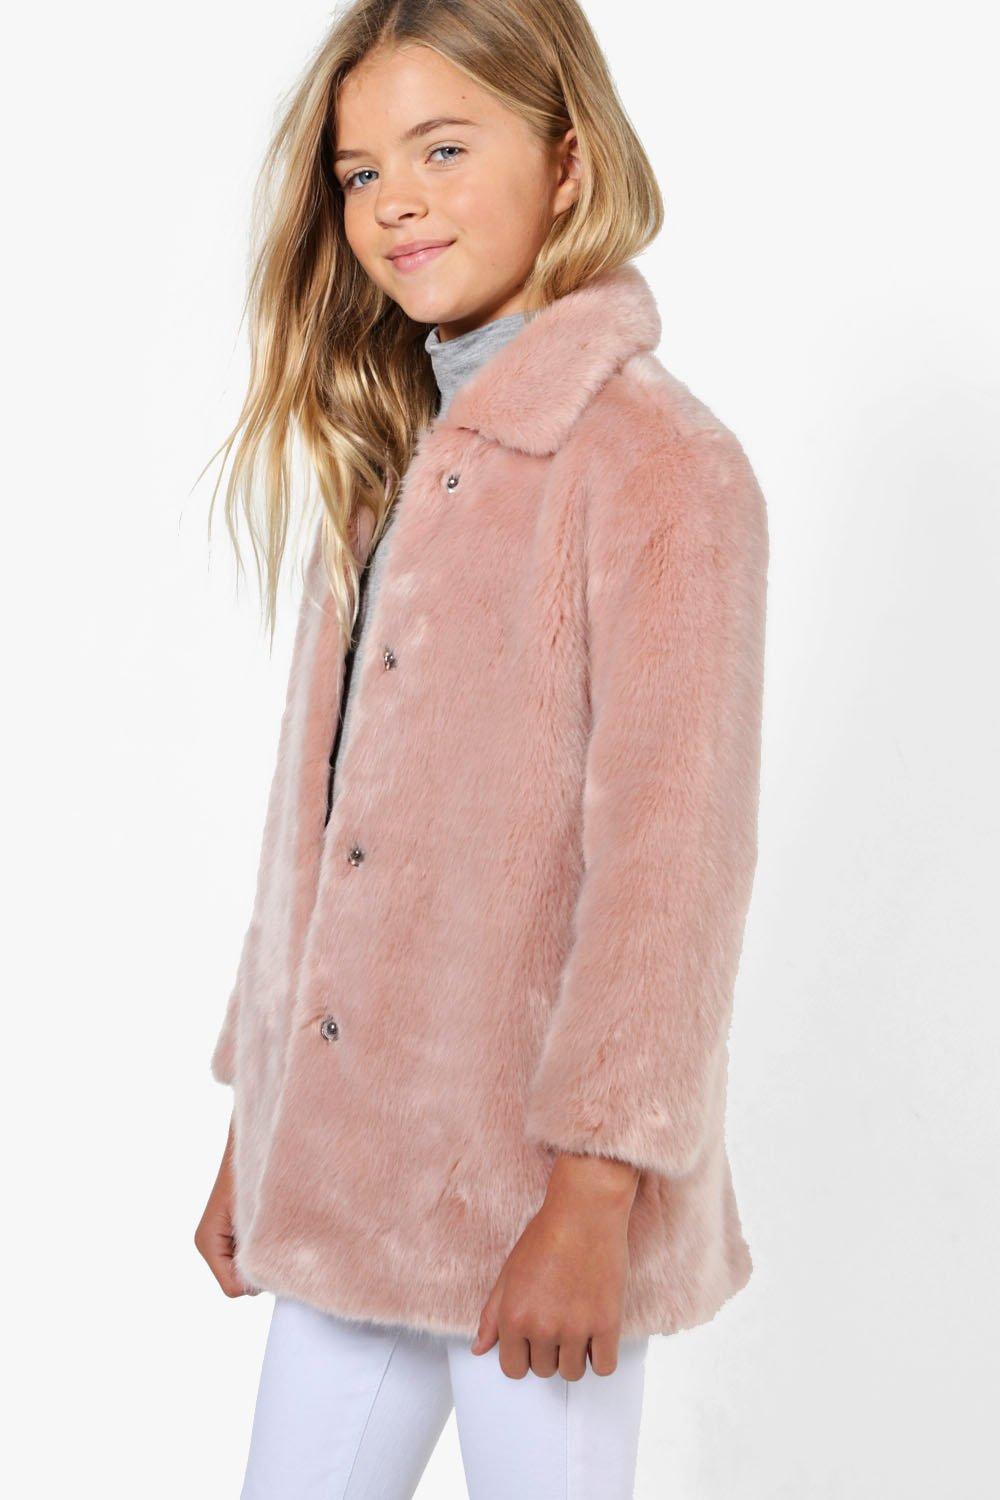 Details about   Girls Faux Diamond Button up Plush Faux Fur Dressy Winter Coat 